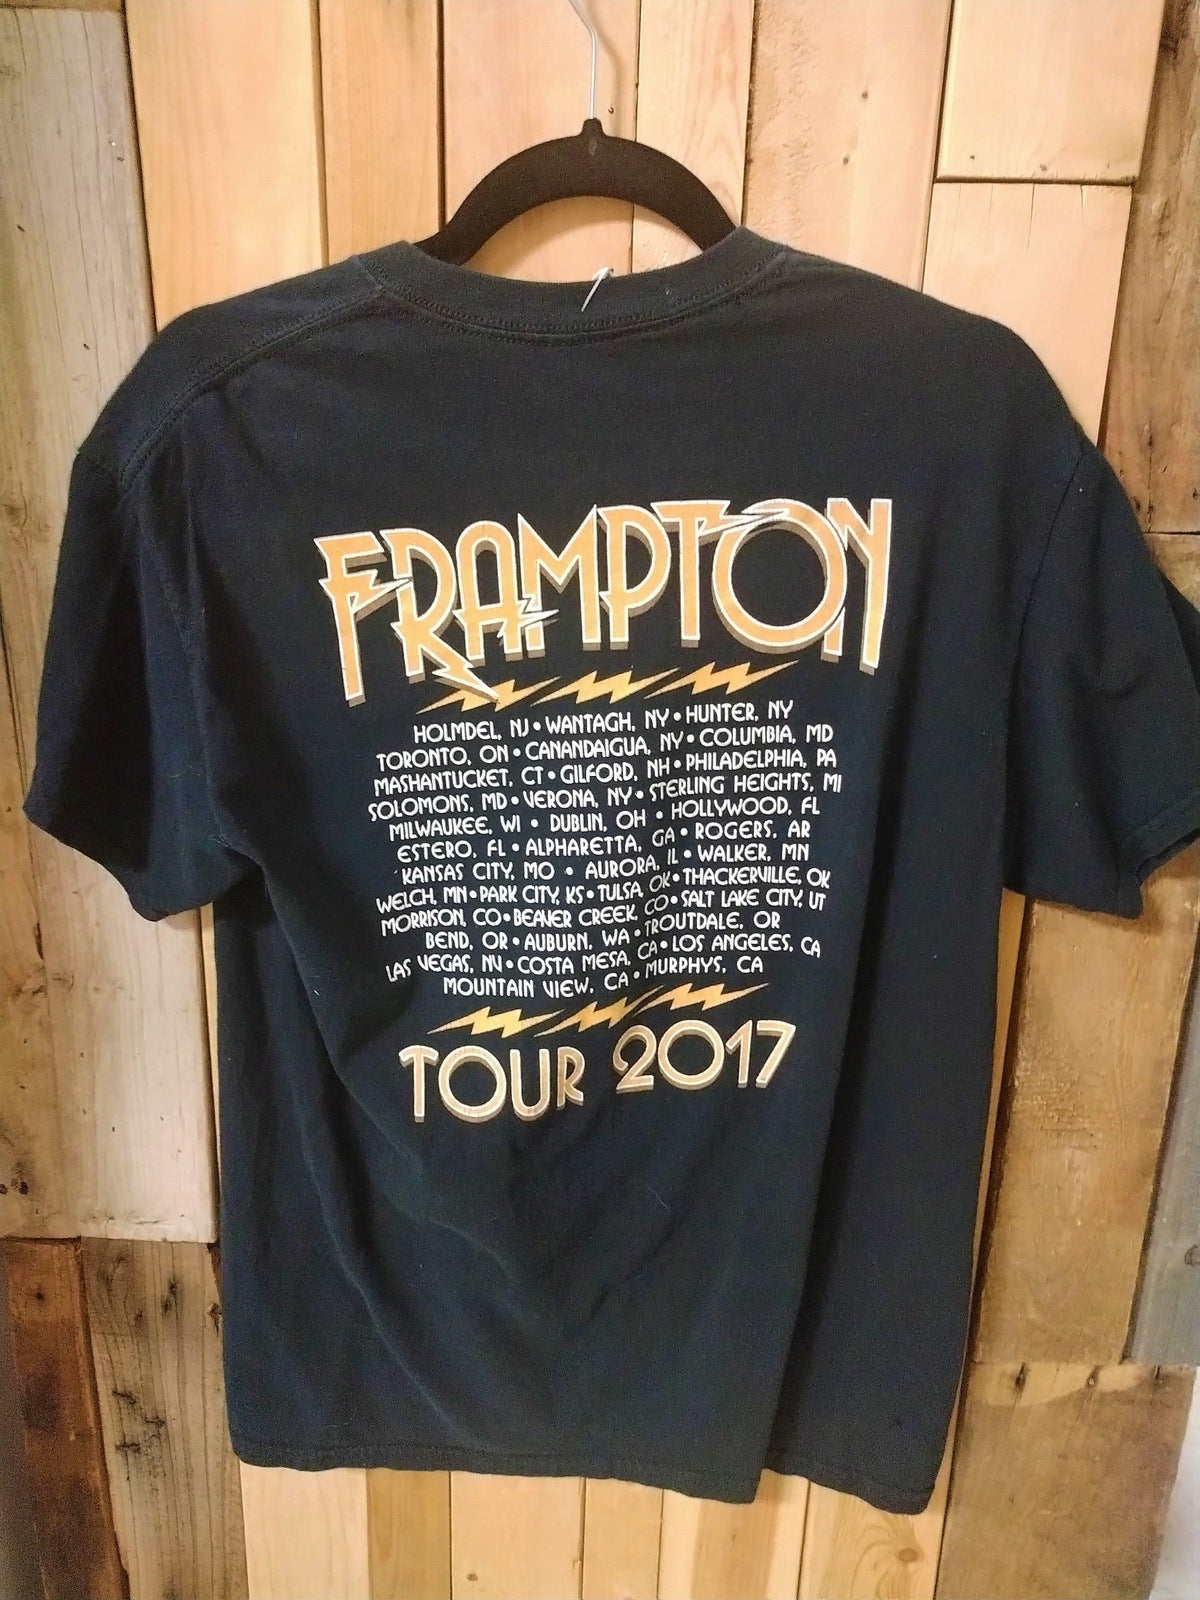 Peter Frampton 2017 Tour Tee Shirt Size Medium